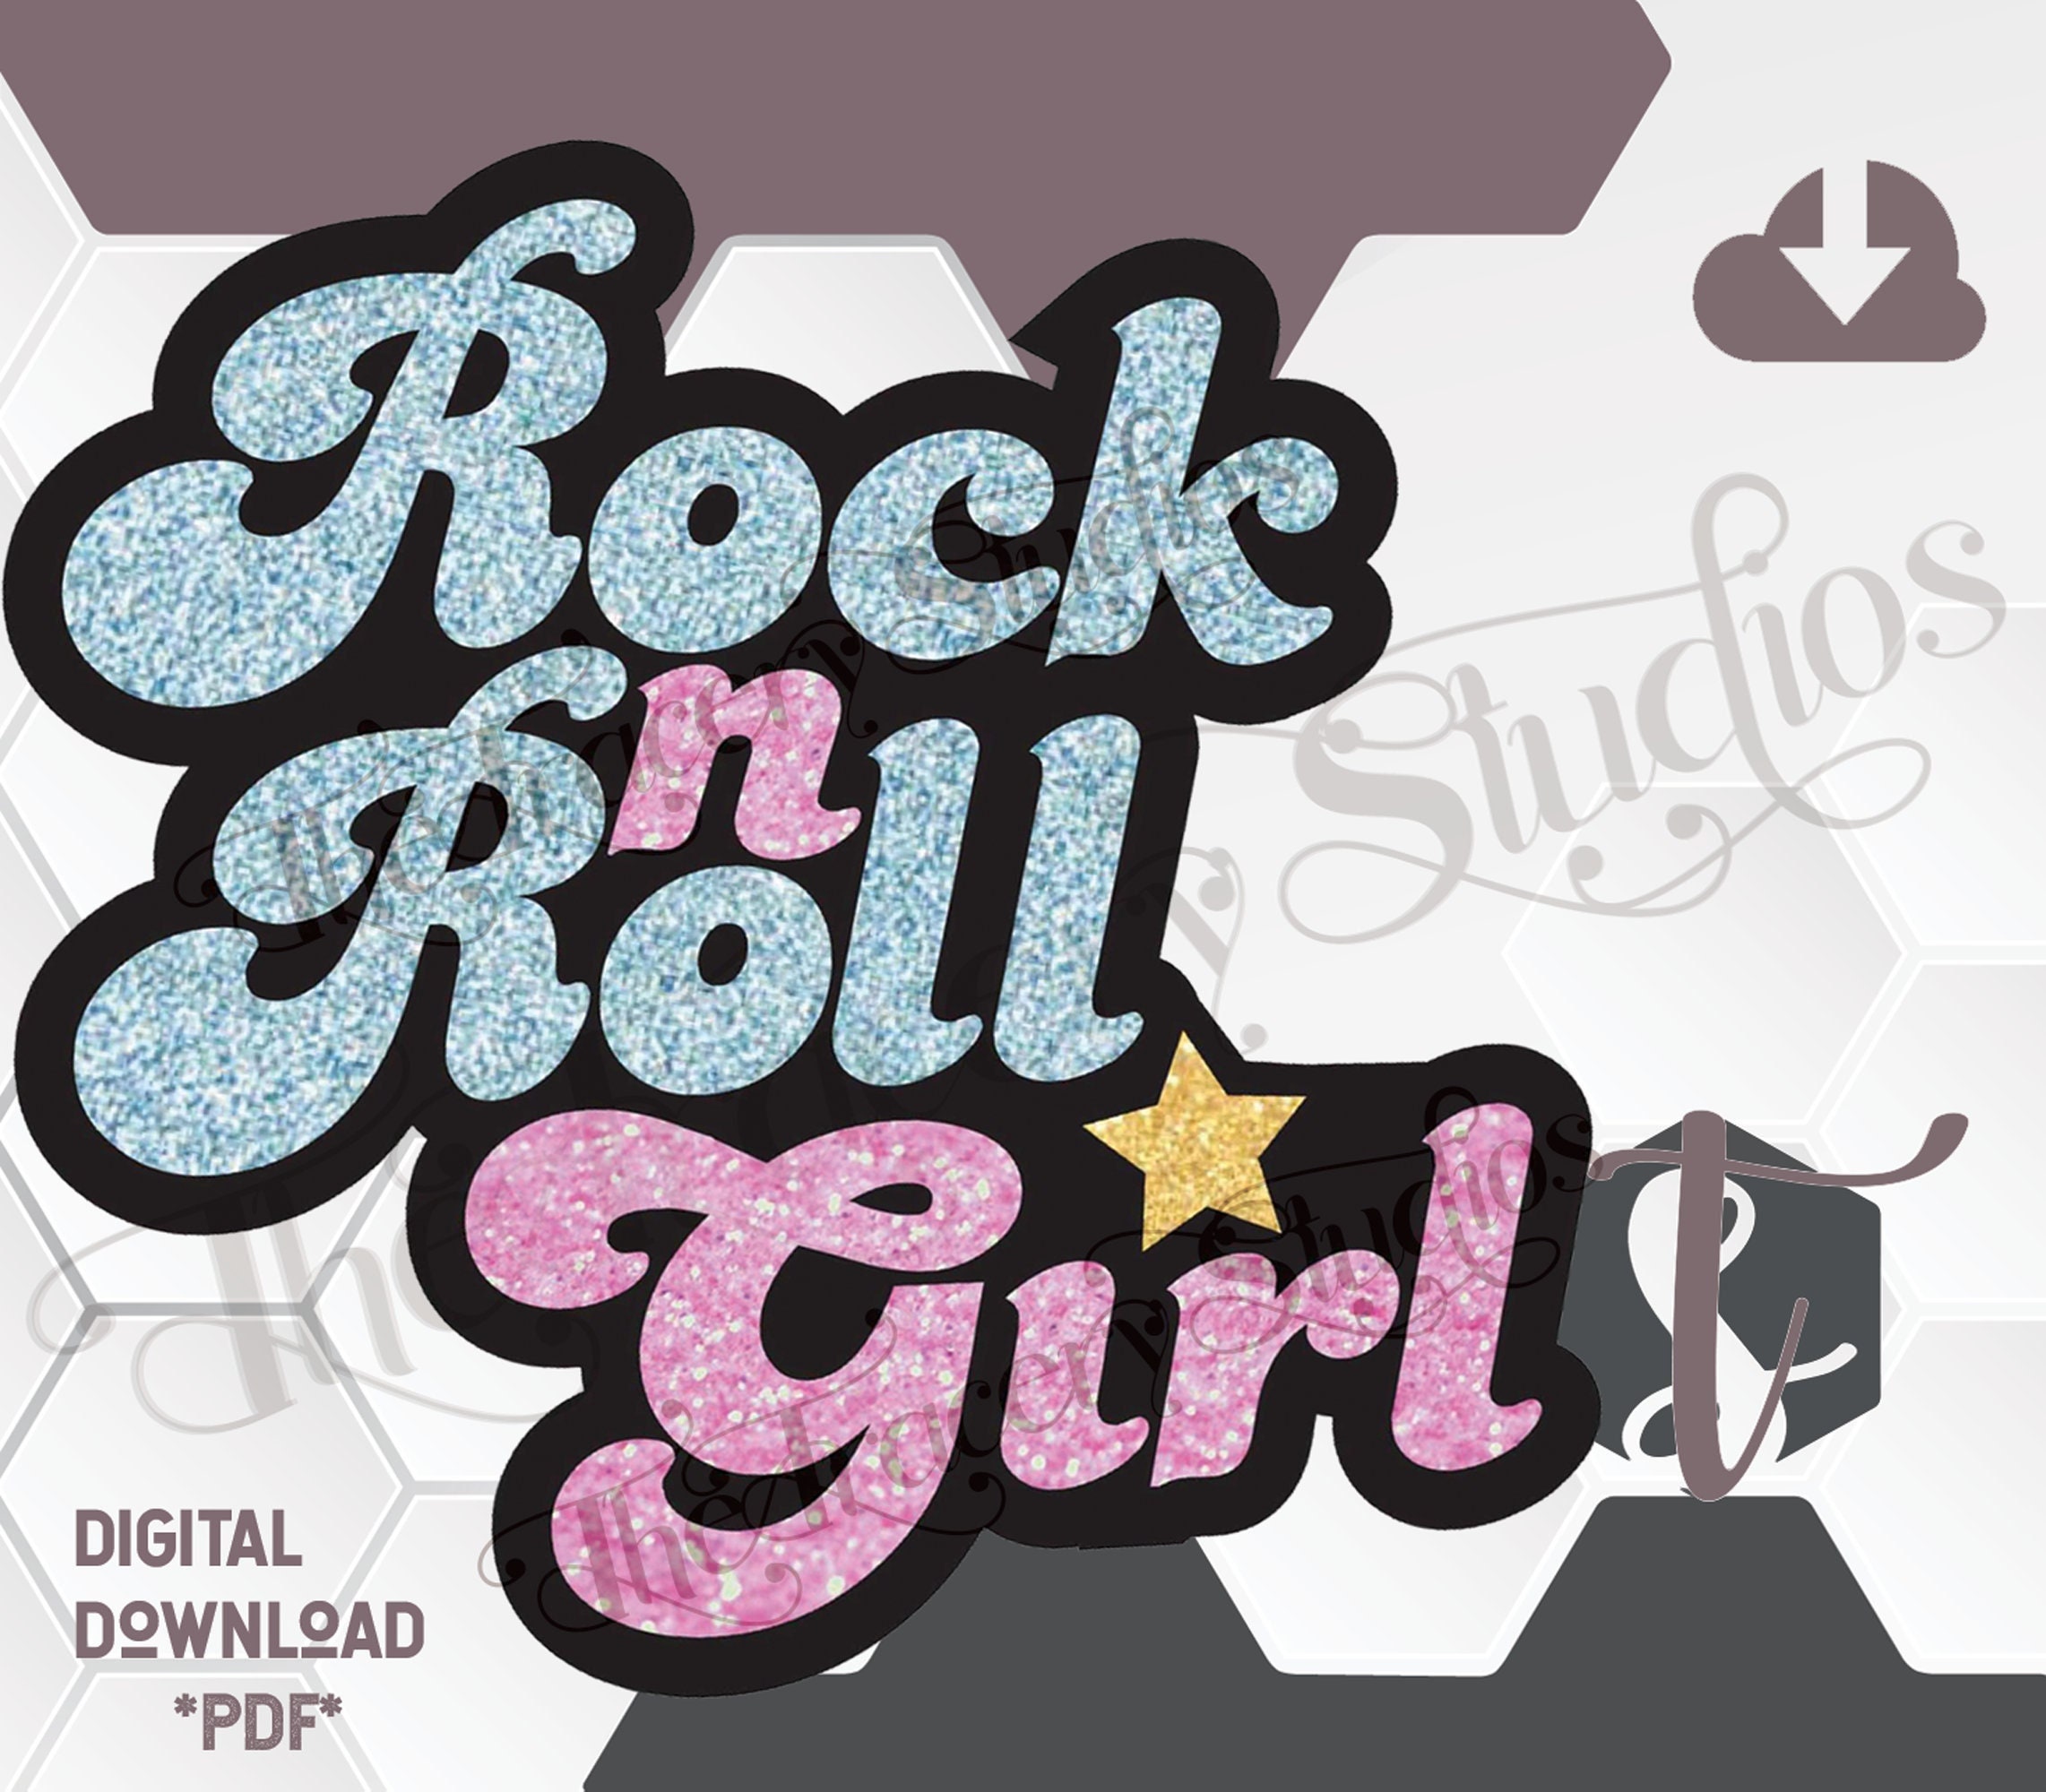 The Original Rock N Roll Girl digital Download